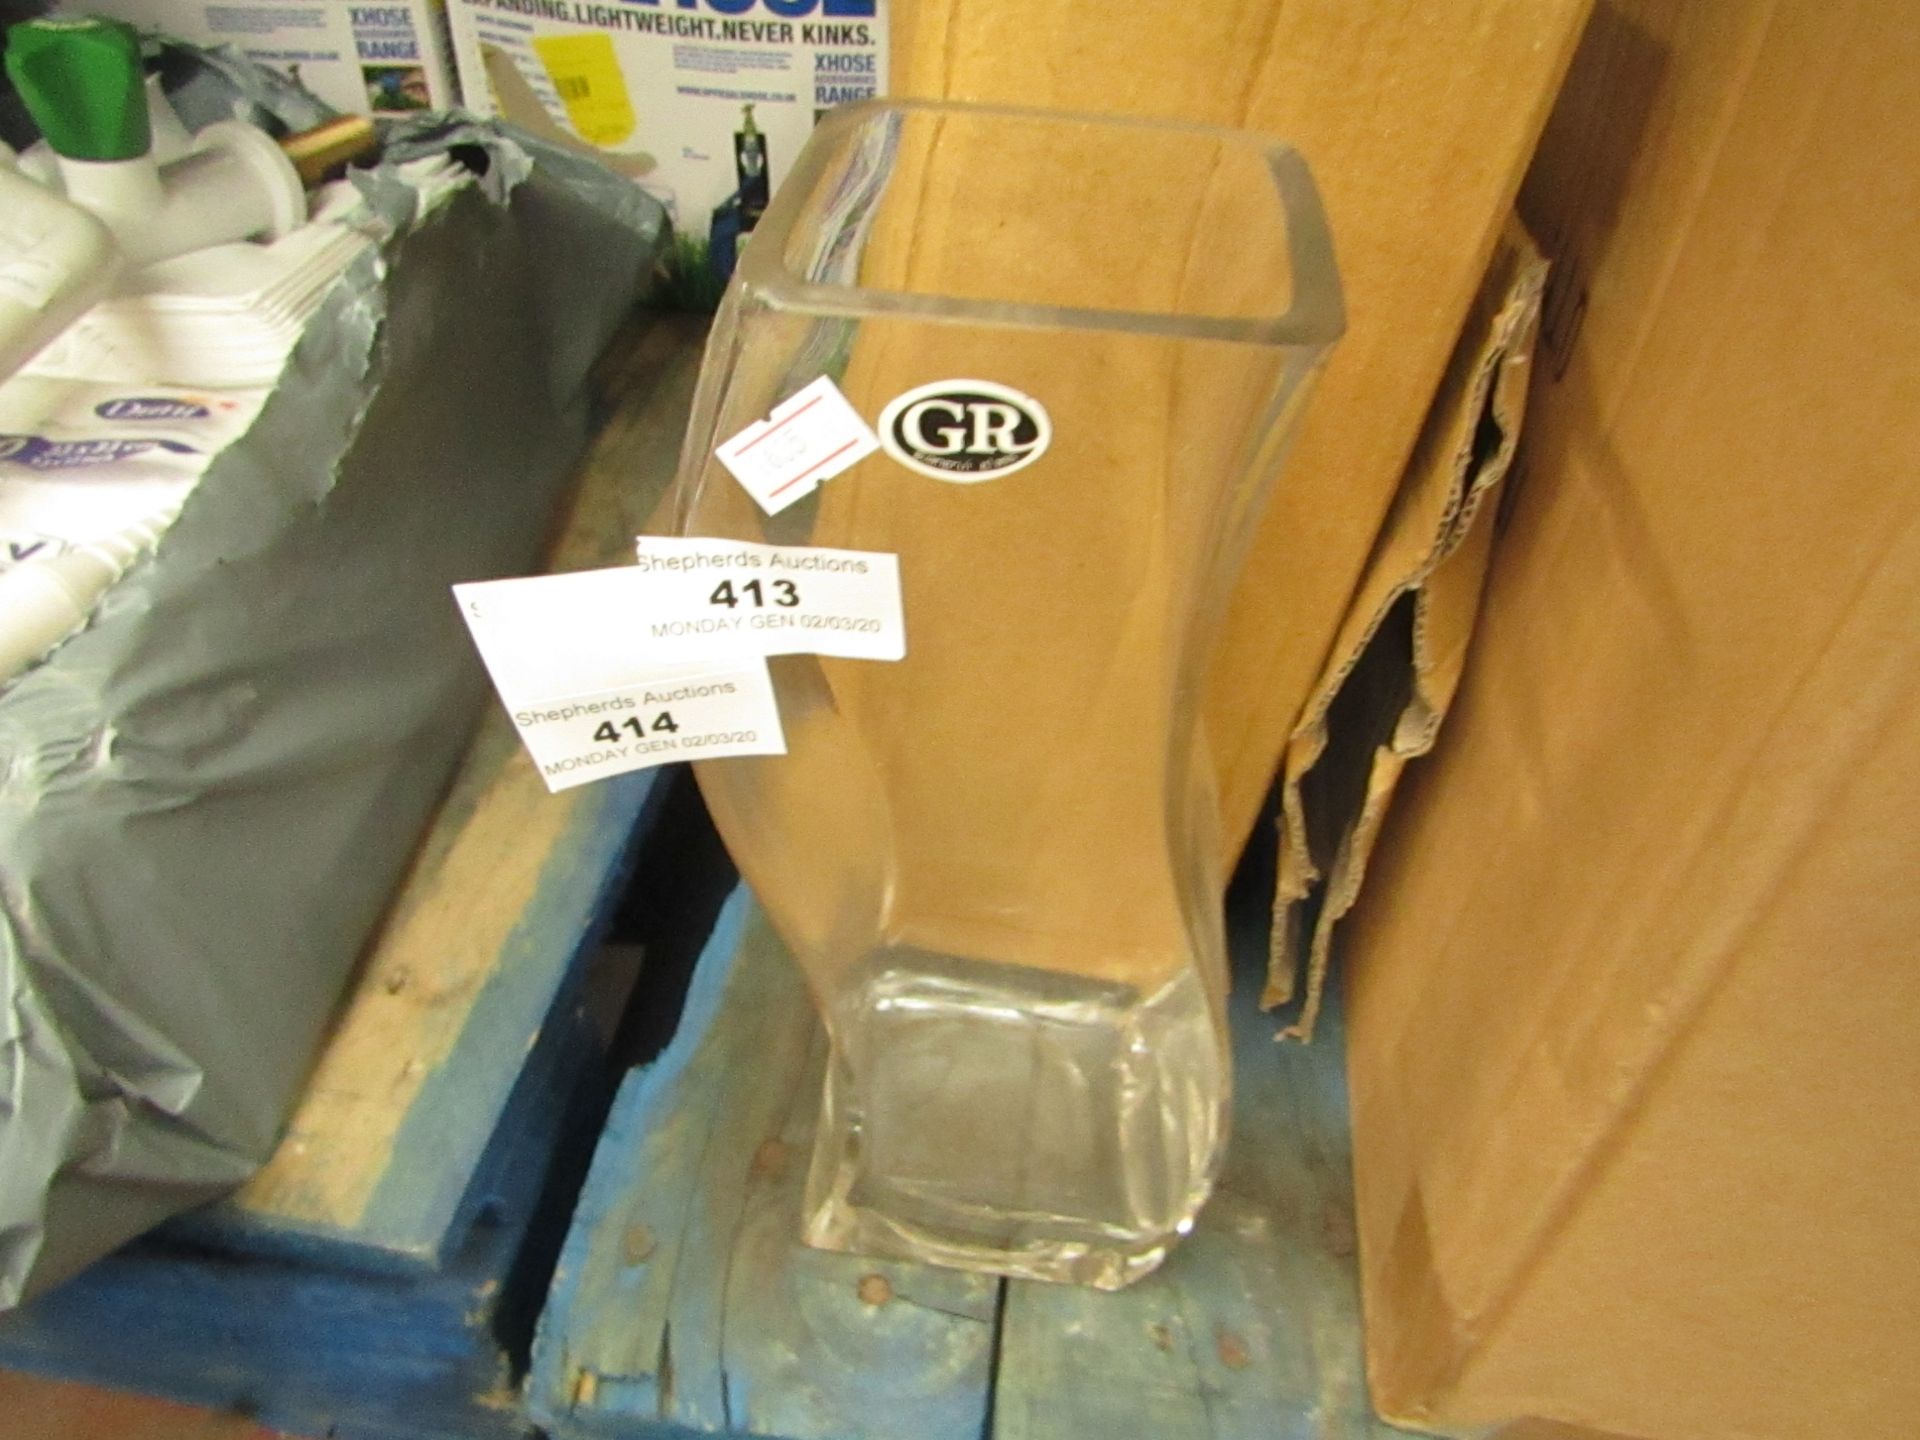 2x GR - Glass Vases - Boxed.